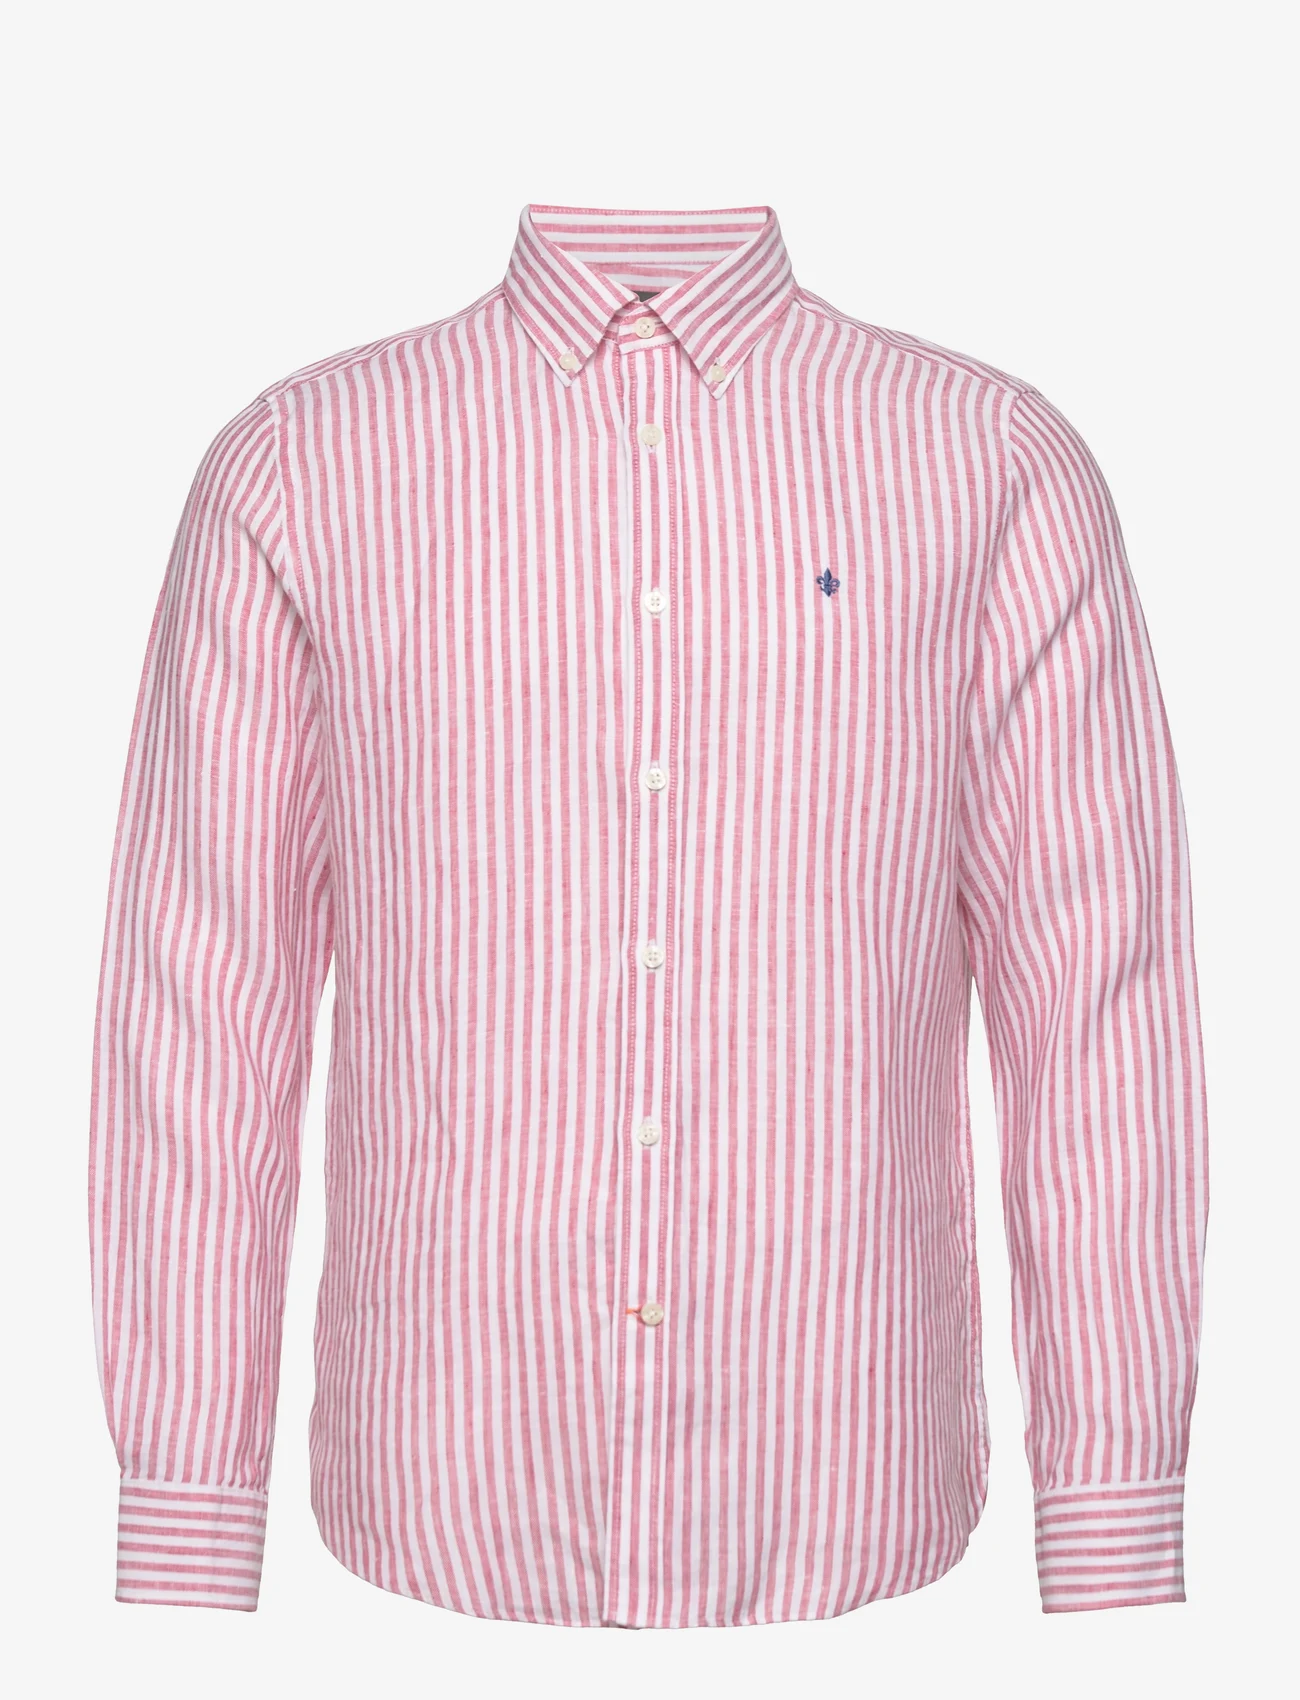 Morris - Douglas Linen Stripe BD Shirt - linskjorter - cerise - 0